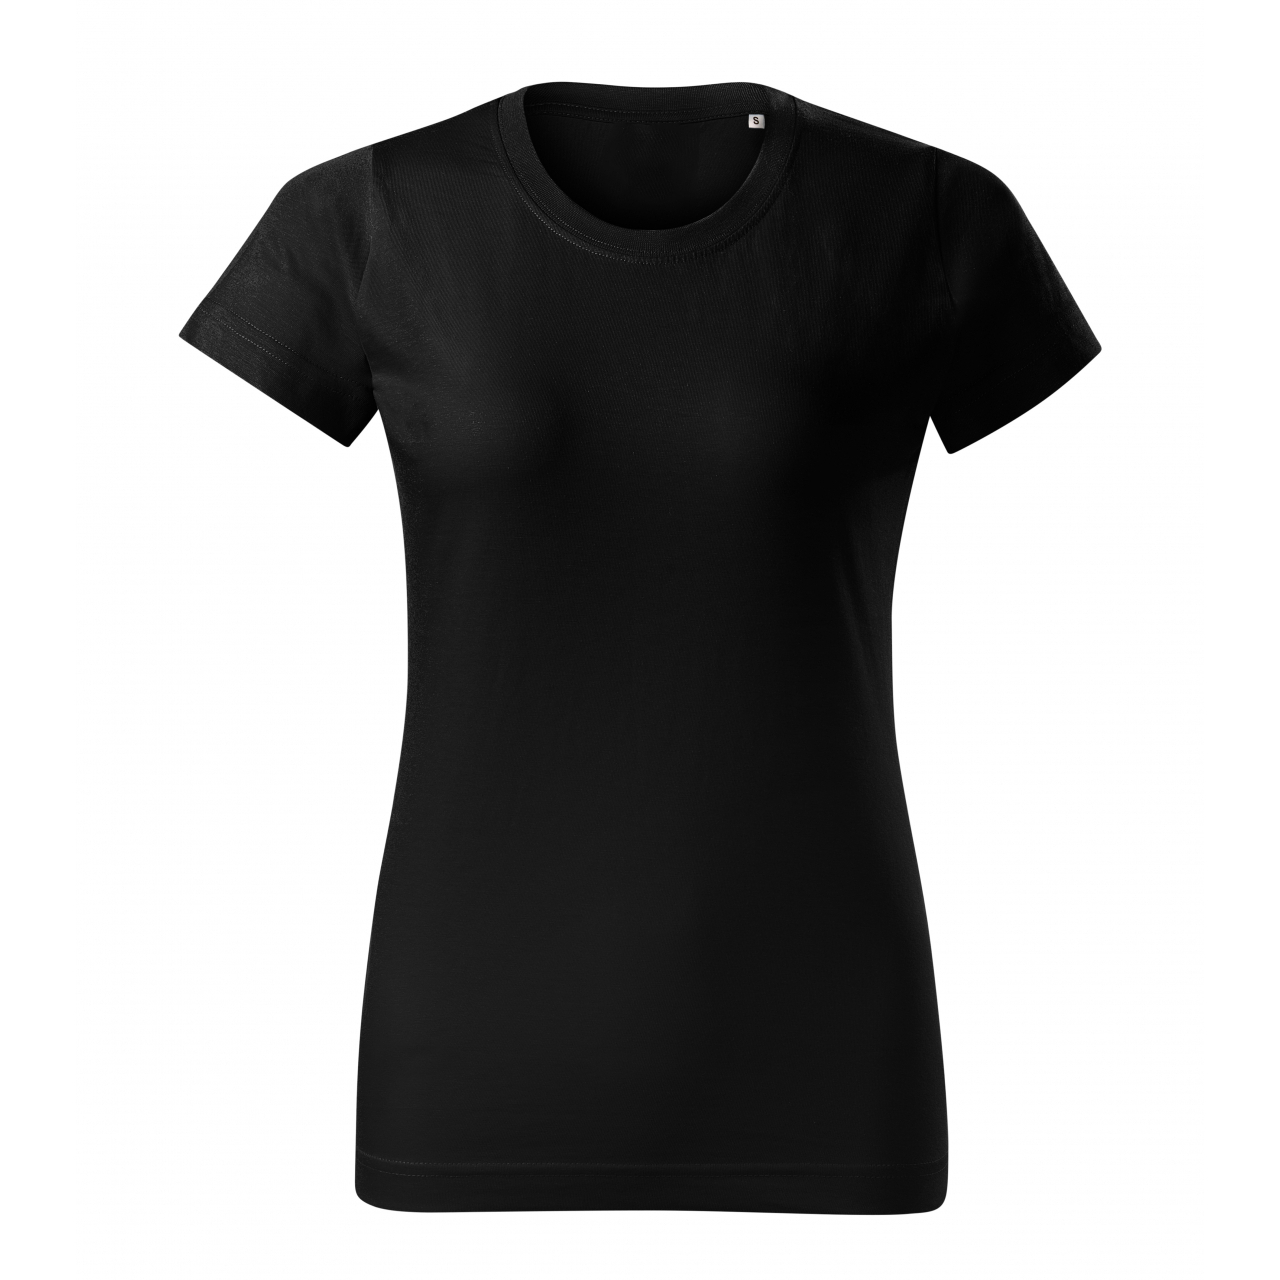 Tričko dámské Malfini Basic Free - černé, XS